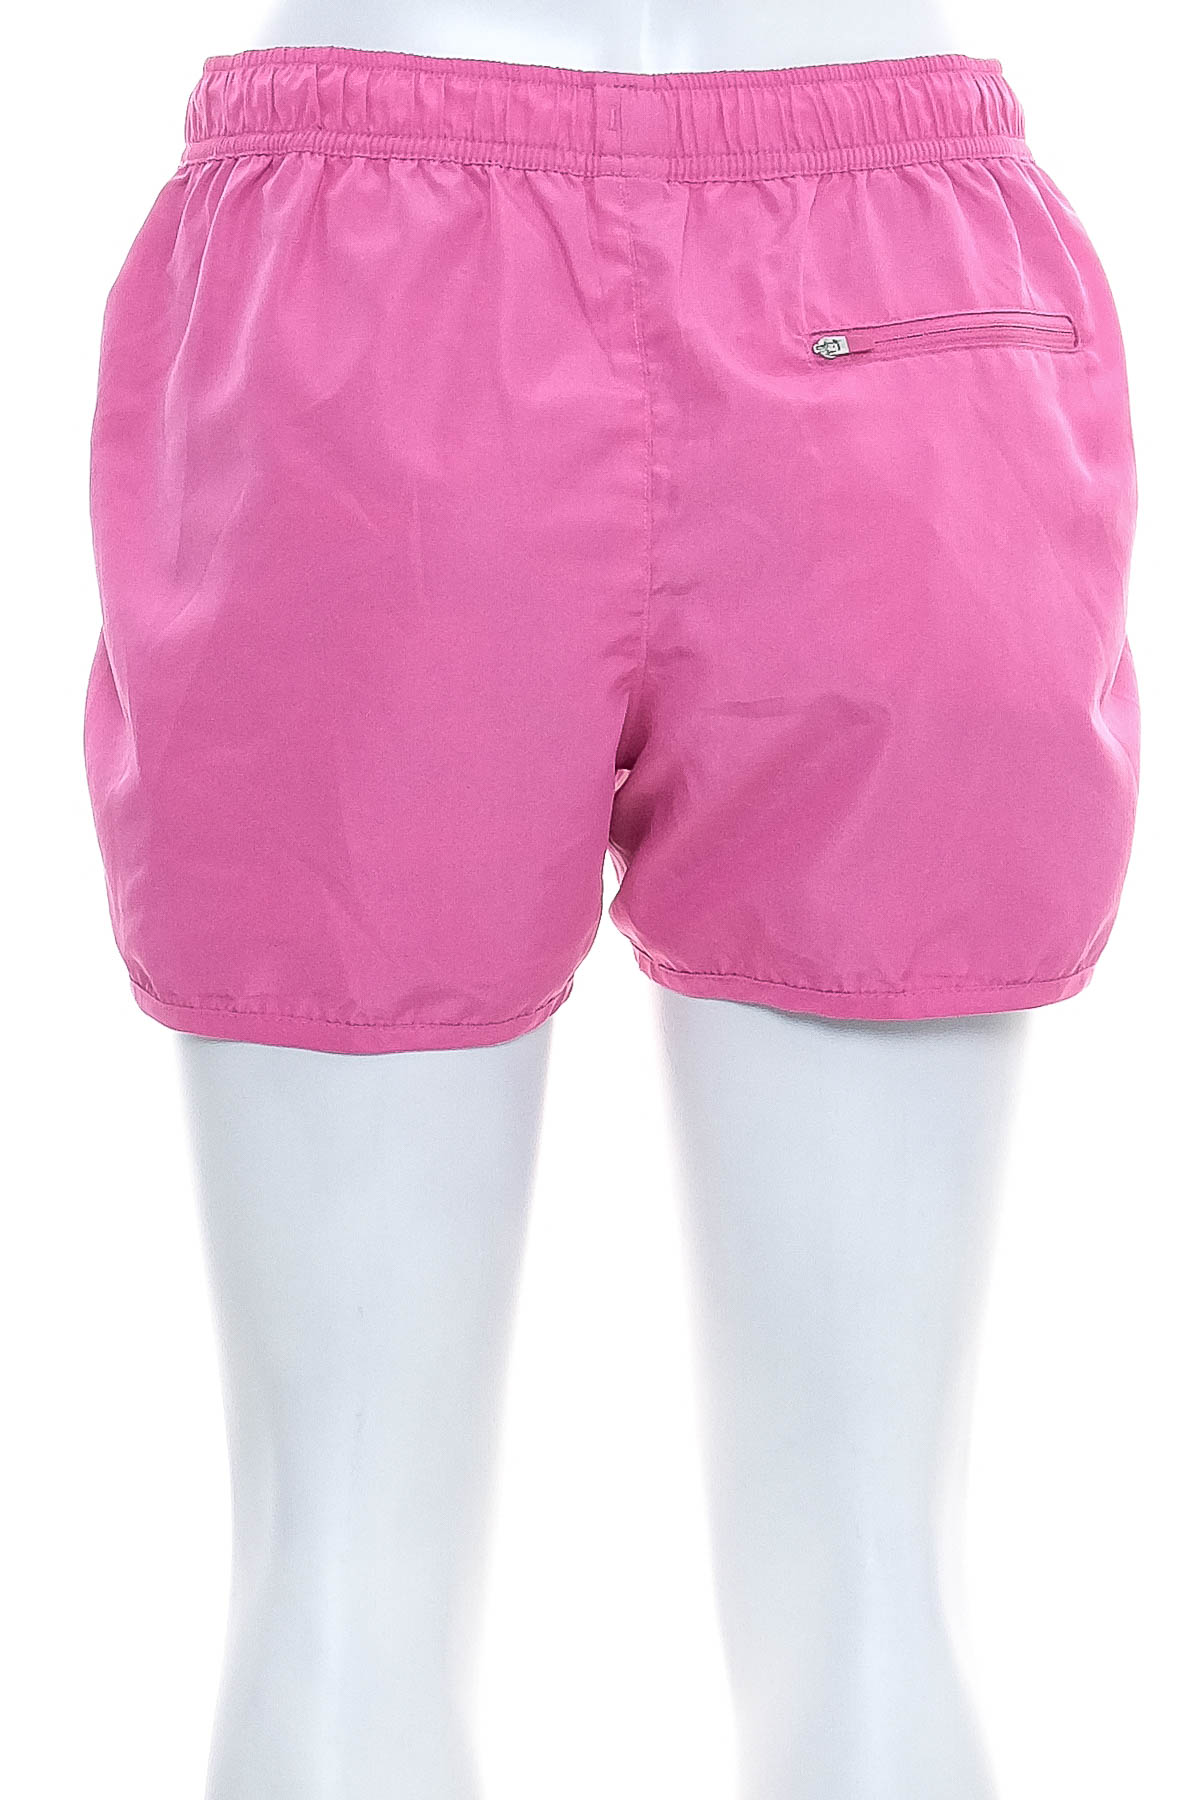 Women's shorts reversible - TCM - 3